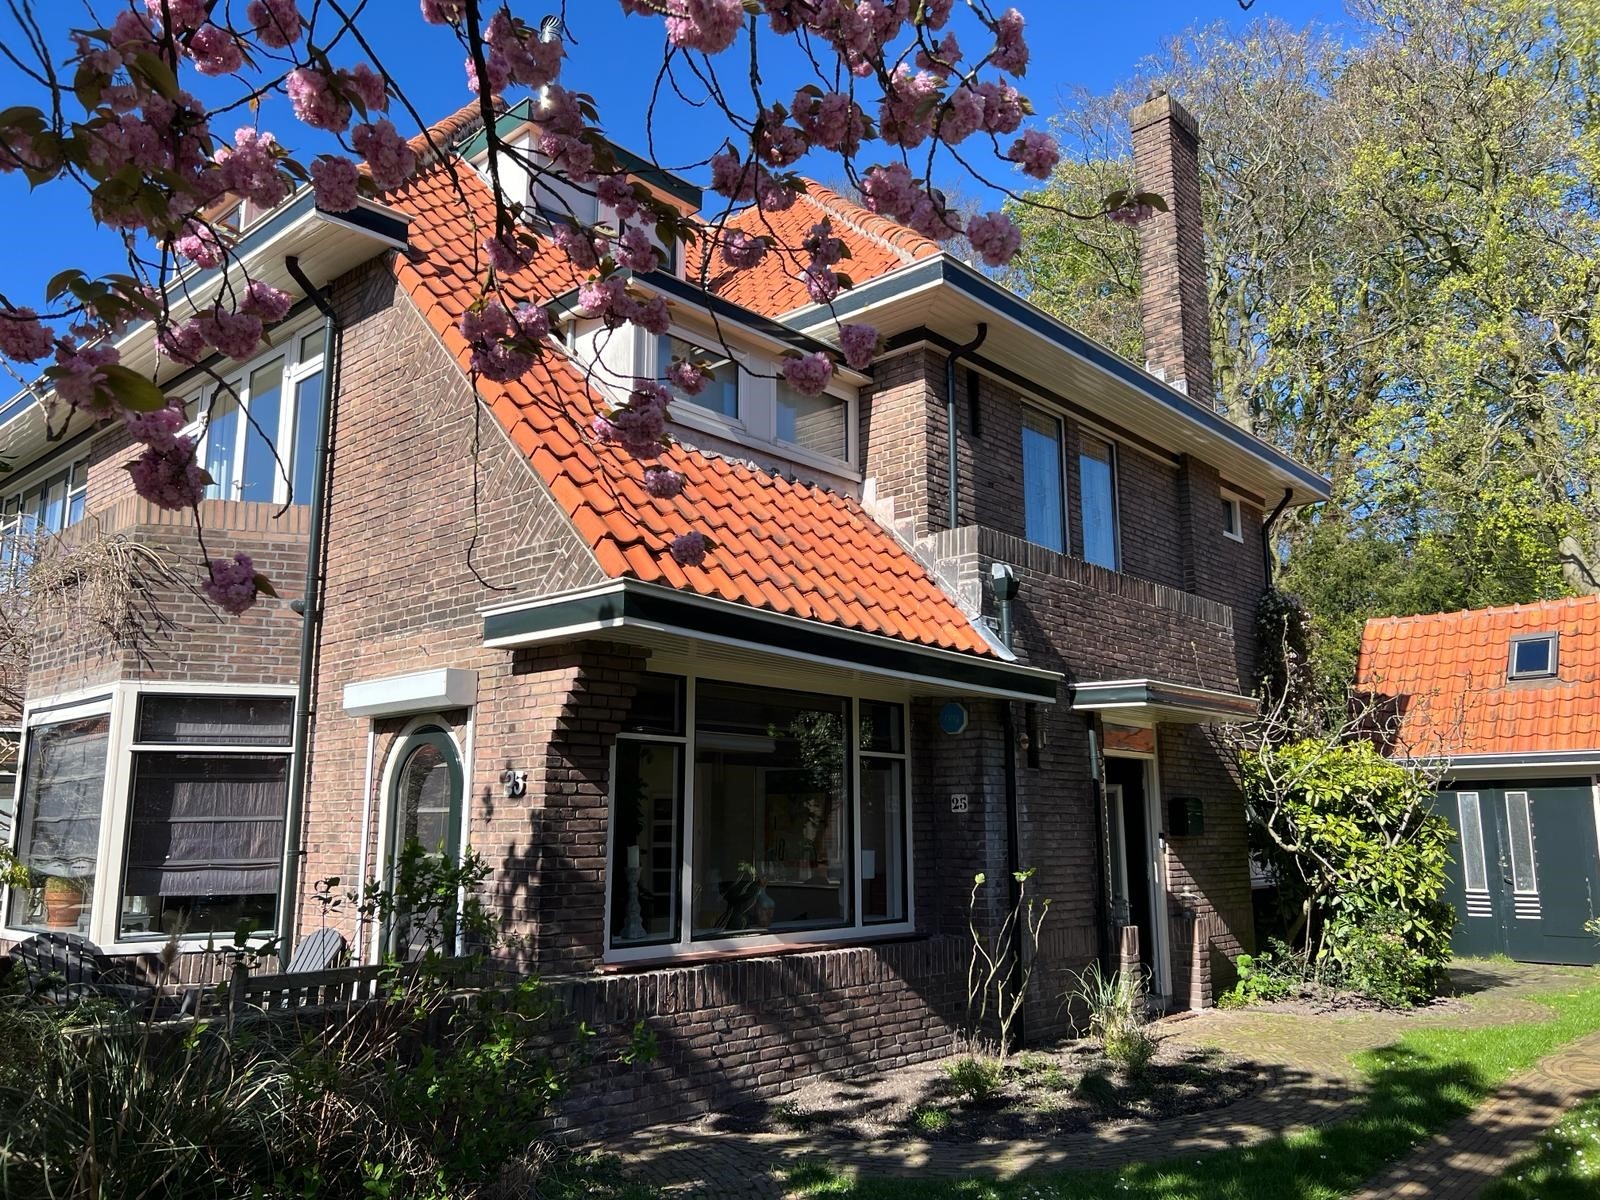 Bekijk foto 1/27 van house in Voorburg